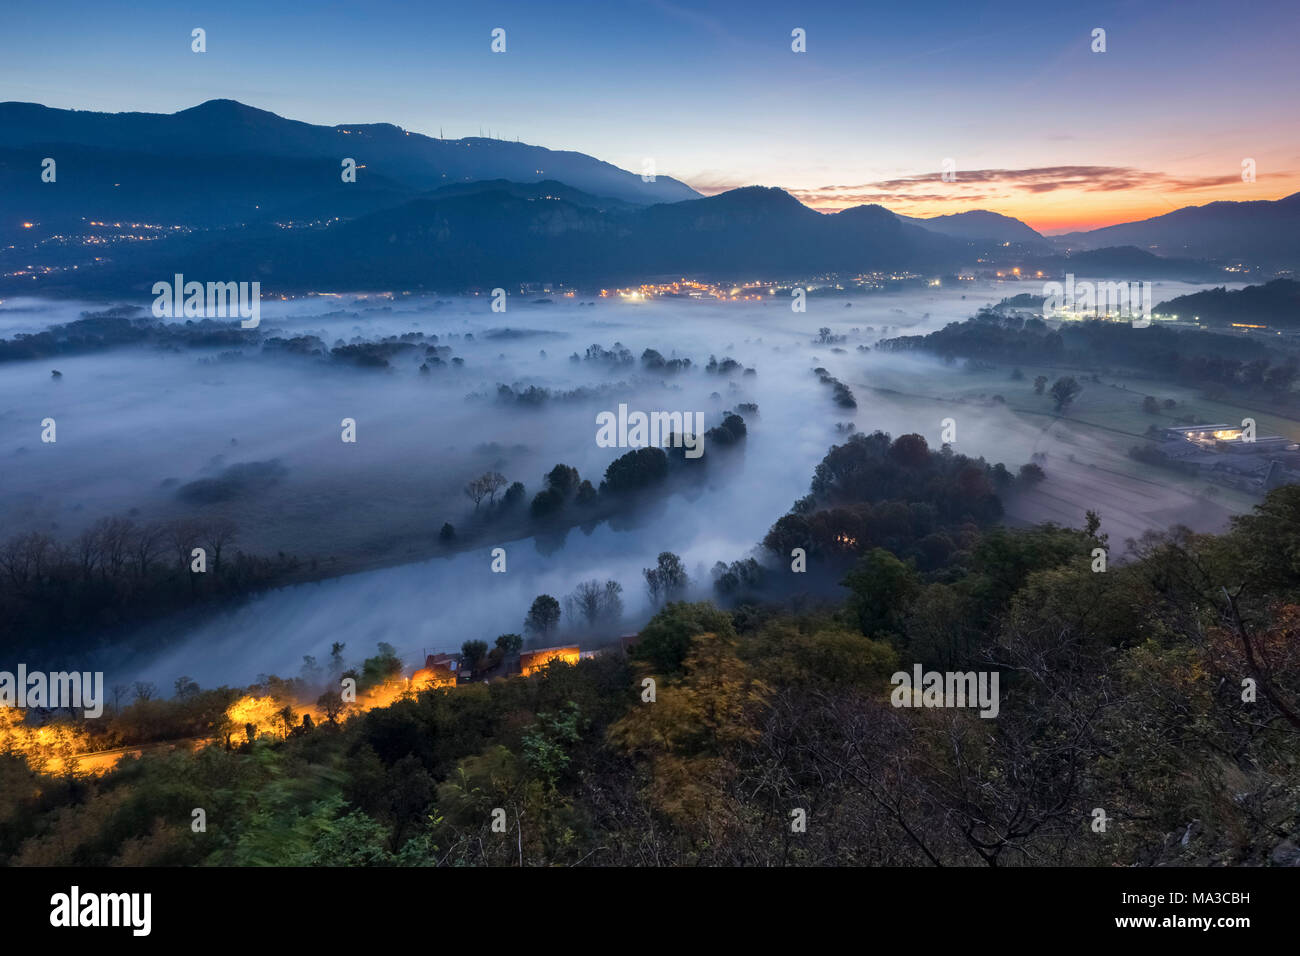 Nebel über den Fluss Adda von Airuno am Santuario Madonna della Rocchetta, Airuno, Parco dell'Adda Nord, Lecco Provinz Brianza, Lombardei, Italien gesehen. Stockfoto